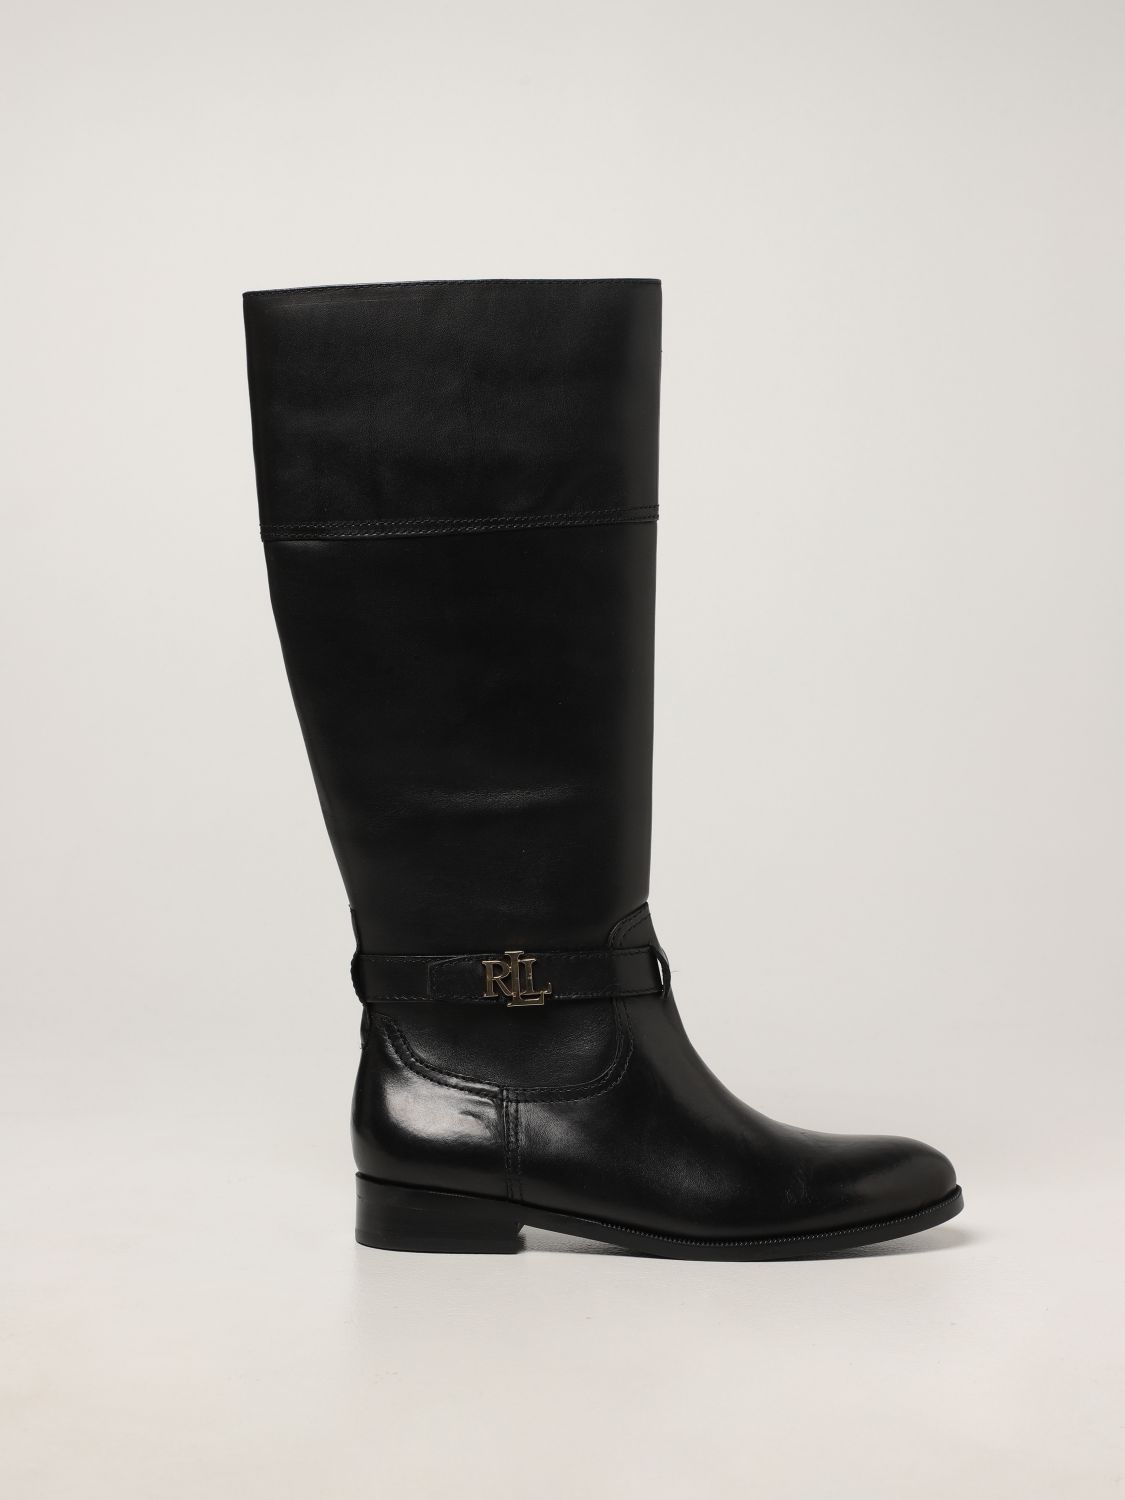 Lauren Ralph Lauren Baylee Leather Boot In Deep Saddle Tan | ModeSens